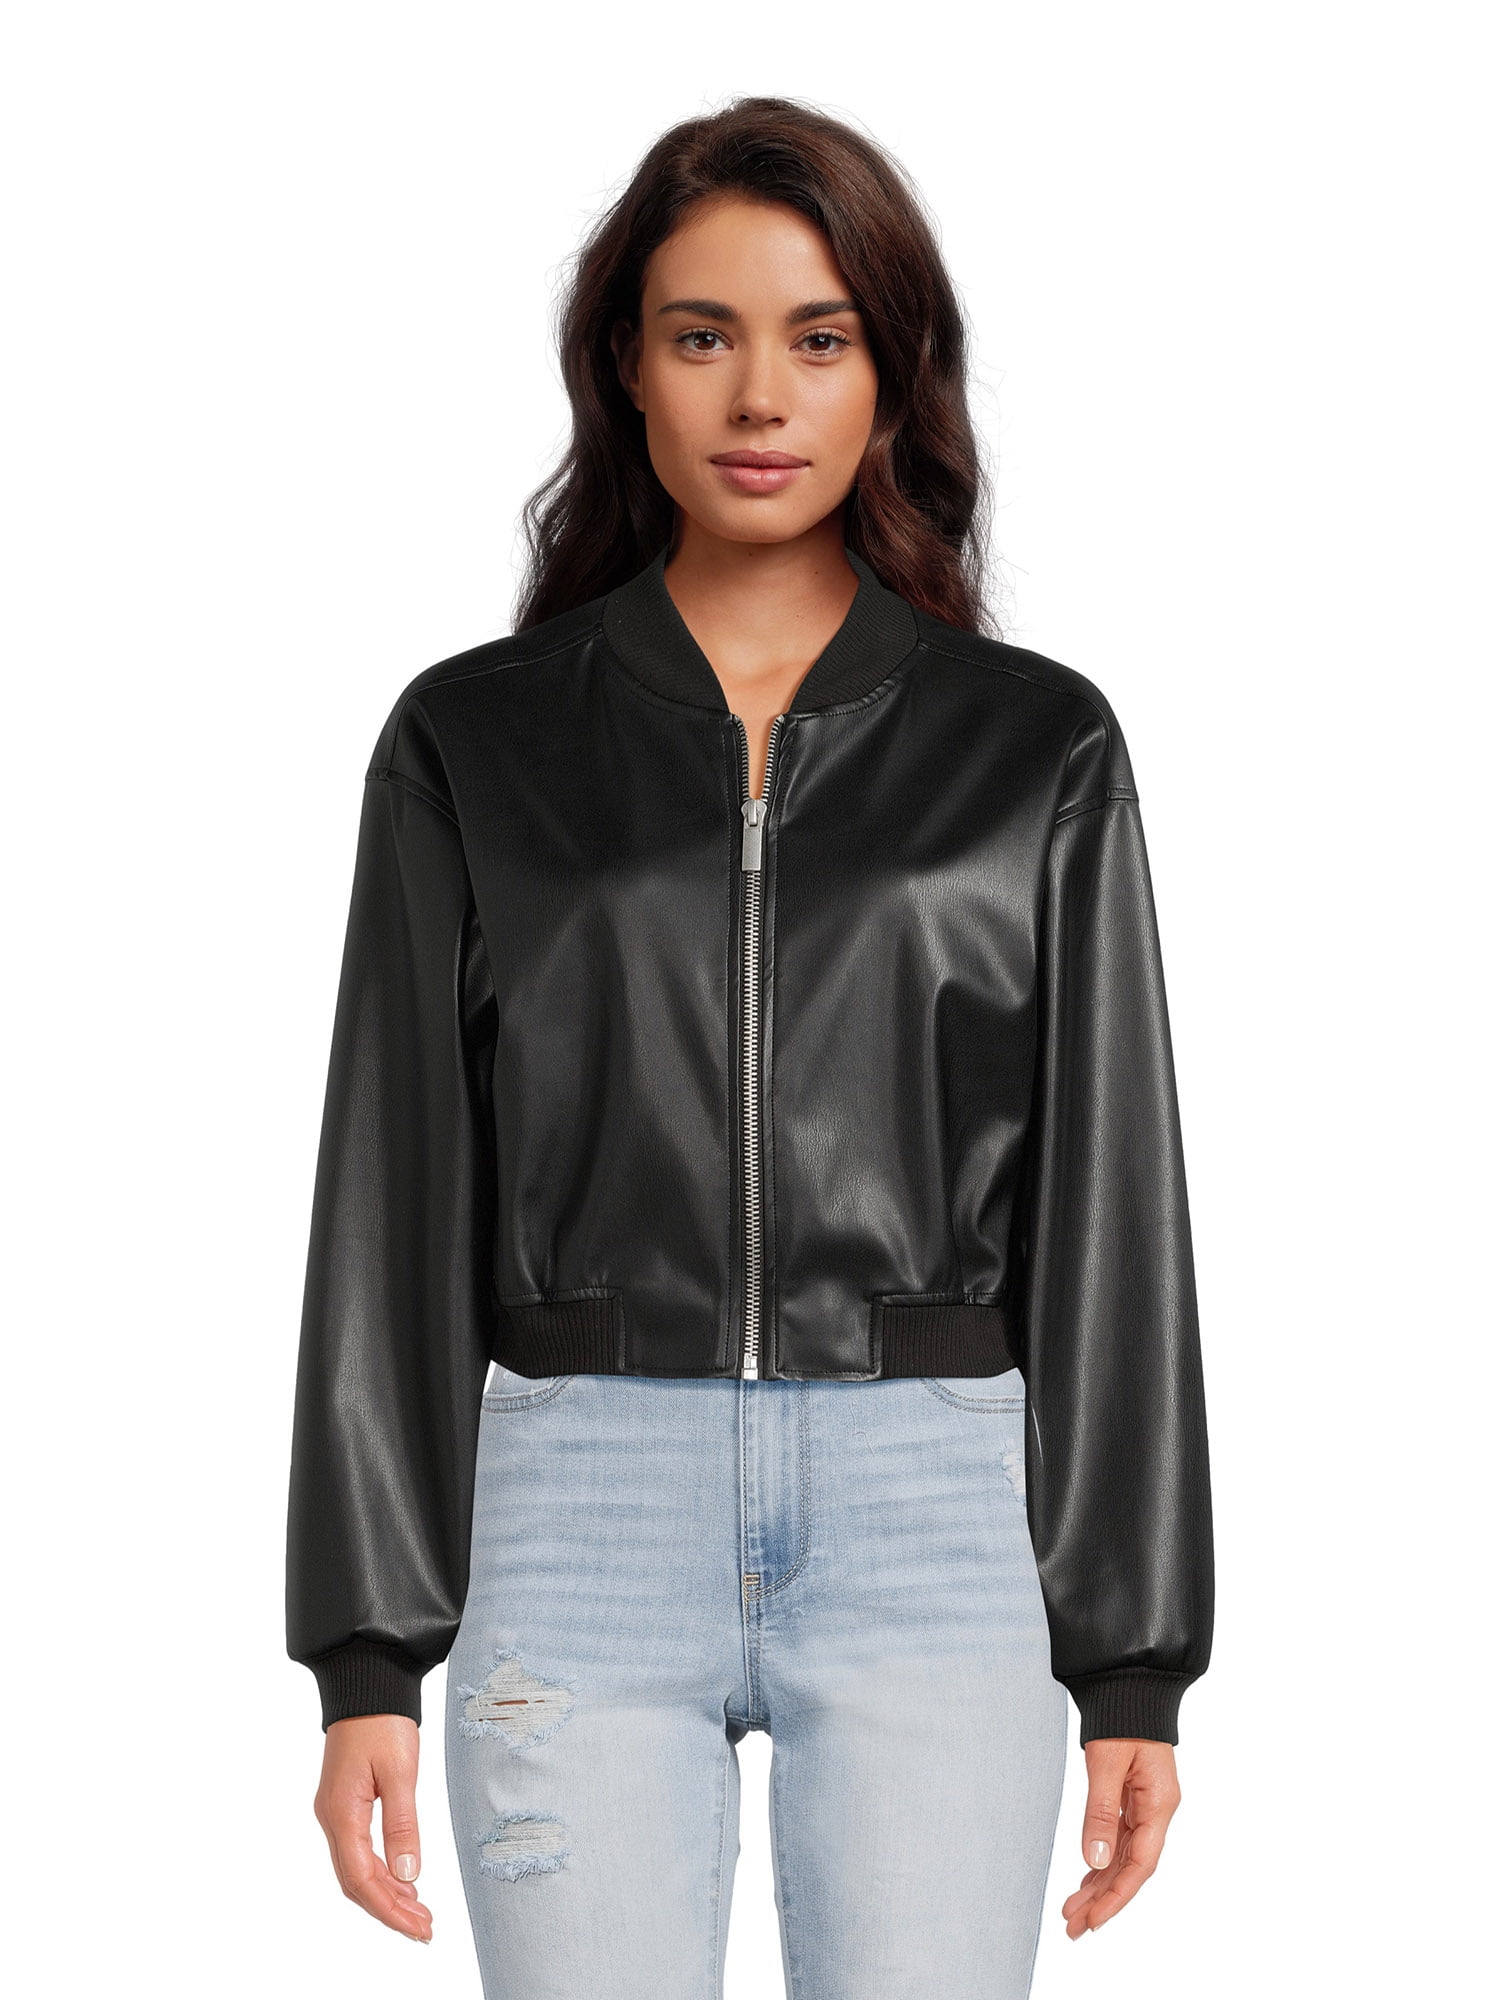 Madden NYC Women's Faux Leather Bomber Jacket, Sizes XS-XXXL - Walmart.com